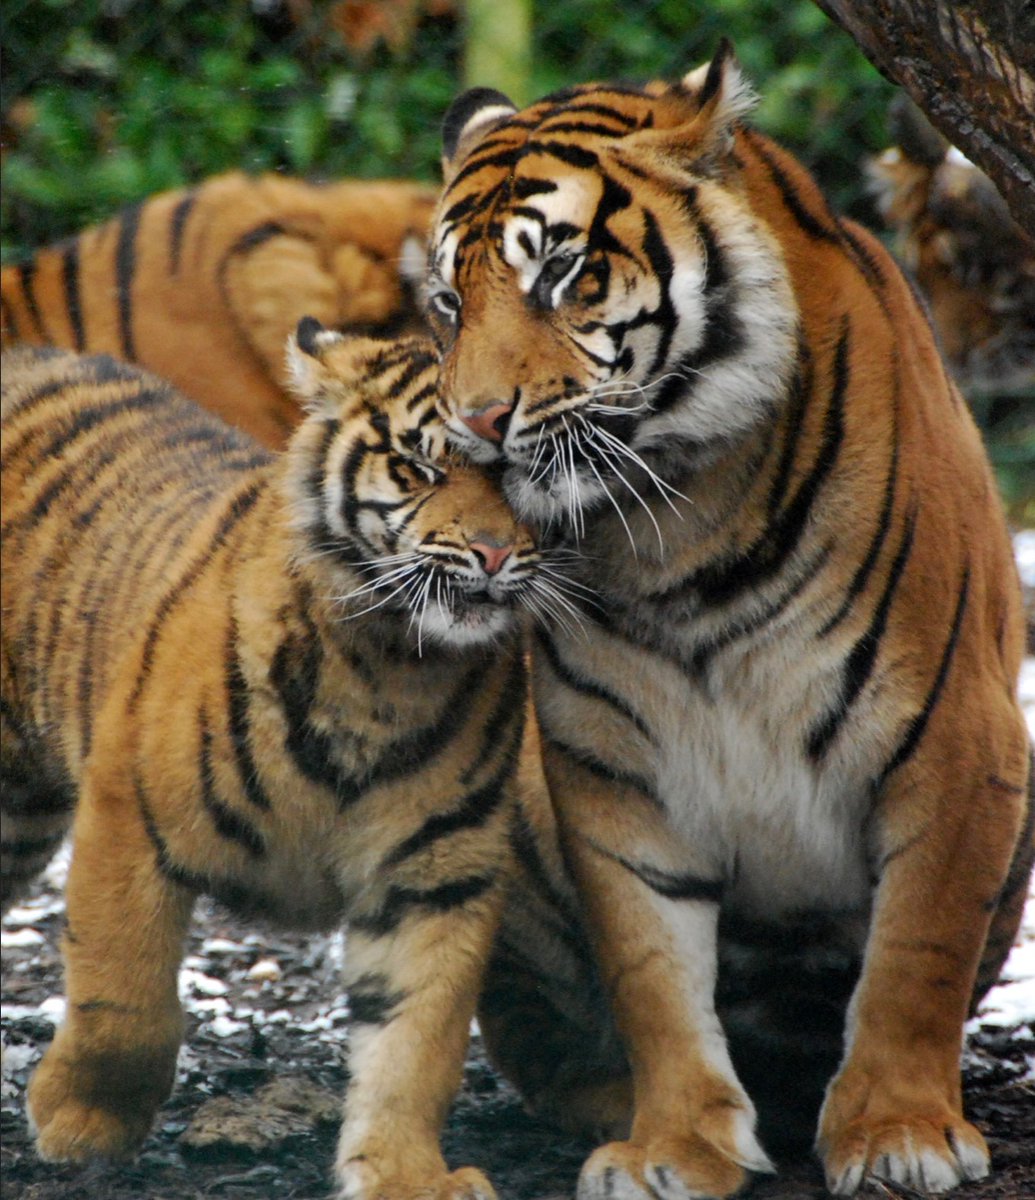 🐯🧡 Tiger Hugs 🐯🧡 ˚. ✦.˳·˖🐅🌿✶ ⋆.✧̣̇˚.🎀💞 ˚. ✦.˳·˖💛🐾✶ ⋆.✧̣̇˚.💜🌸